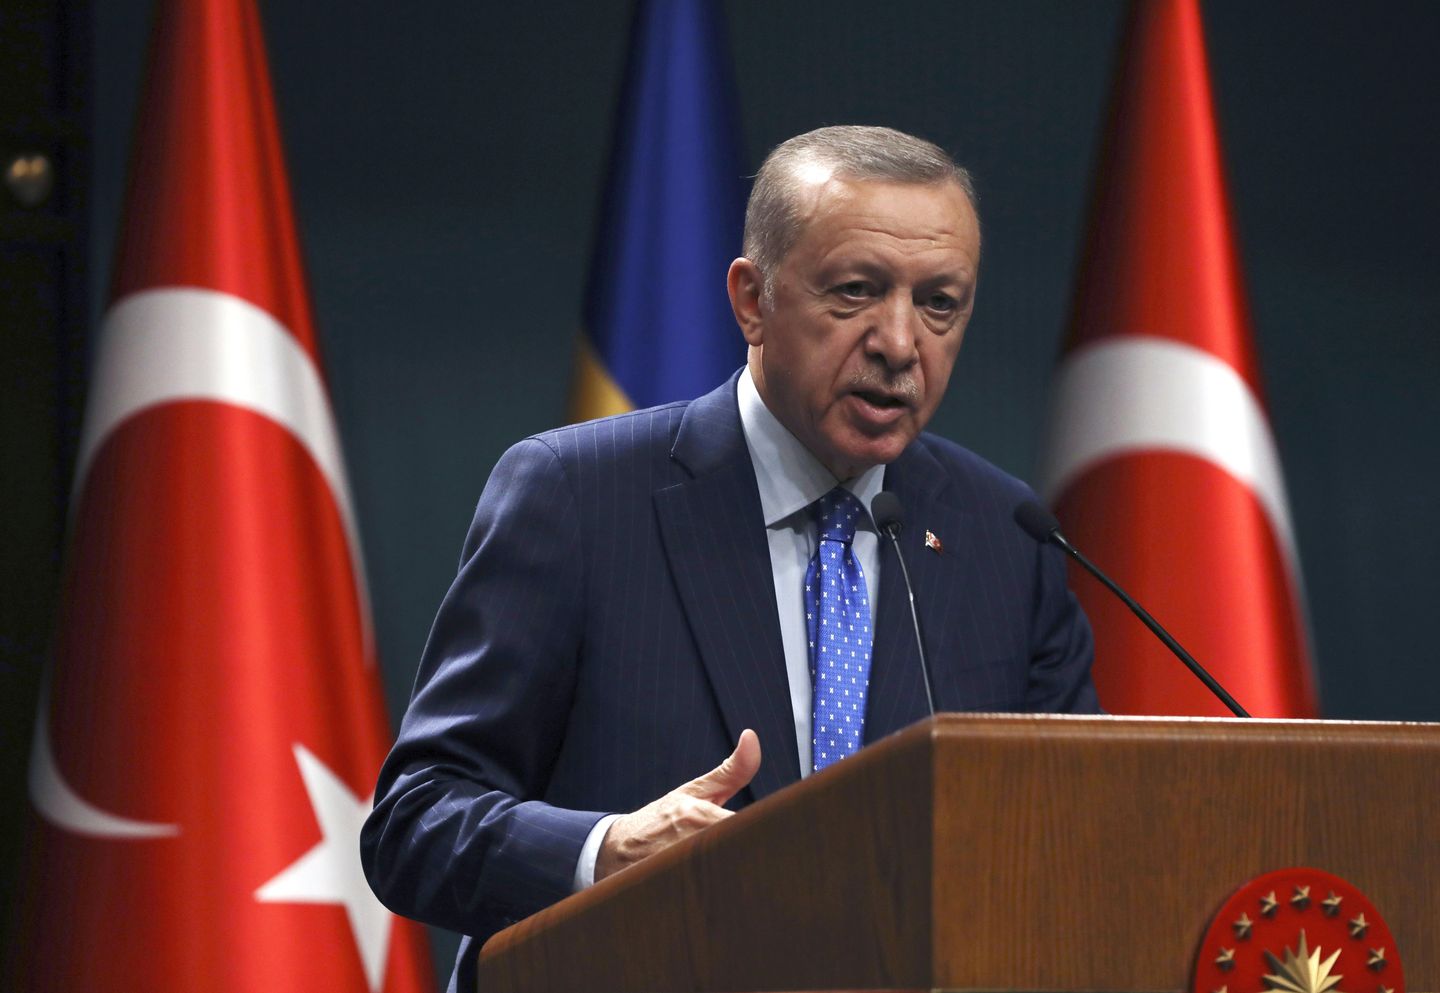 Türkiye Cumhurbaşkanı Recep Tayyip Erdoğan, İsveç'in NATO üyelik hedefine destek vermediğini söyledi